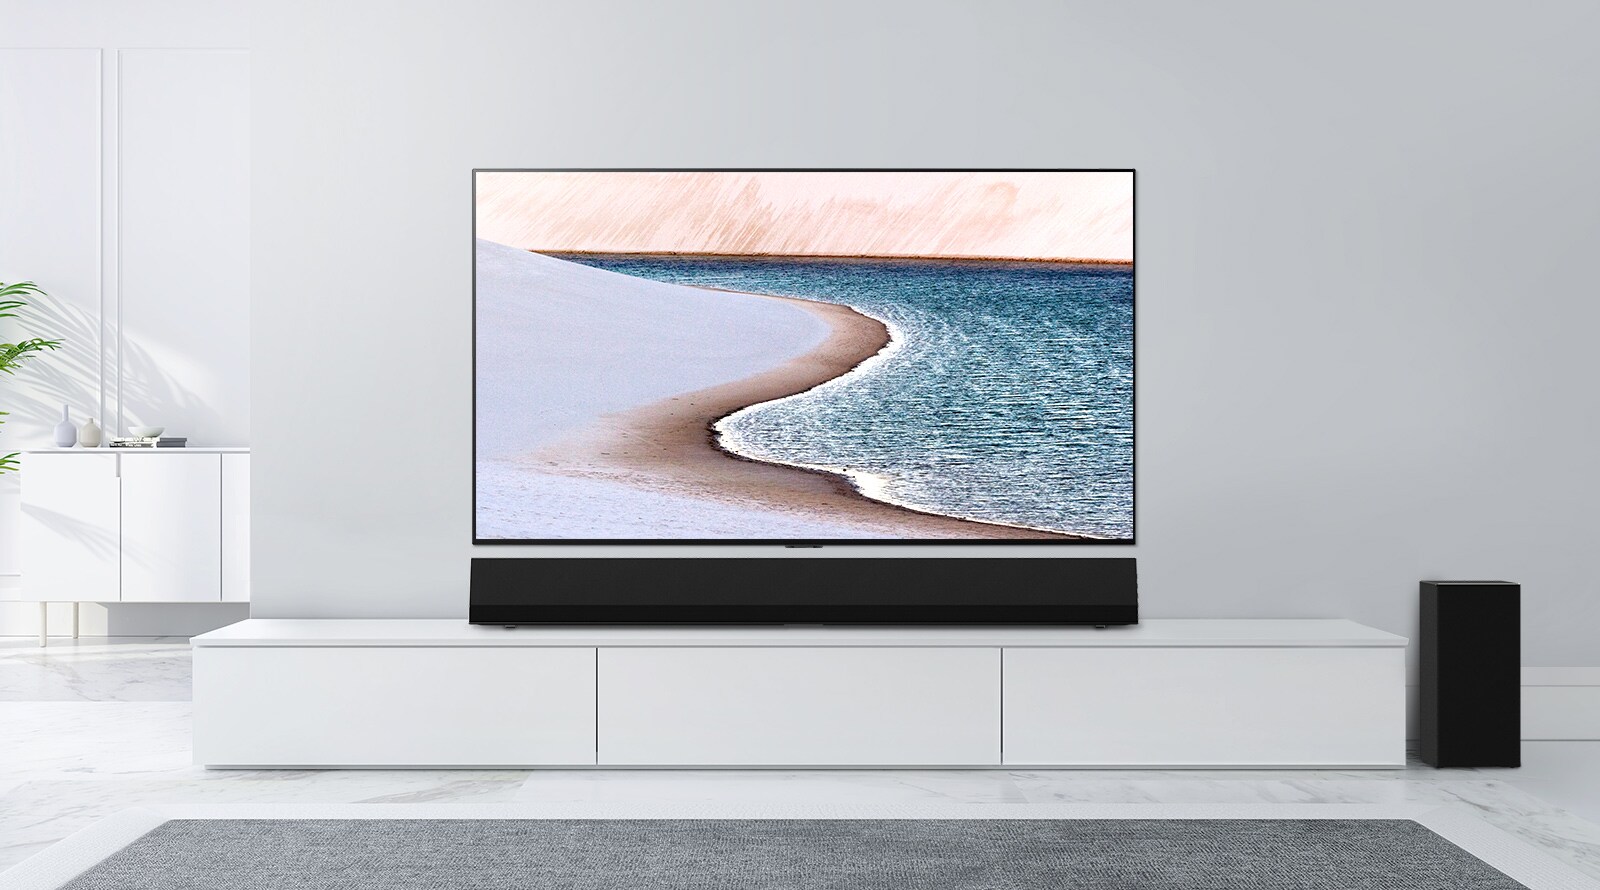 טלוויזיה תלויה על קיר אפור בהיר. סאונד-בר מבית LG מונח מתחתיה על מזנון לבן. הטלוויזיה מציגה חוף ים.